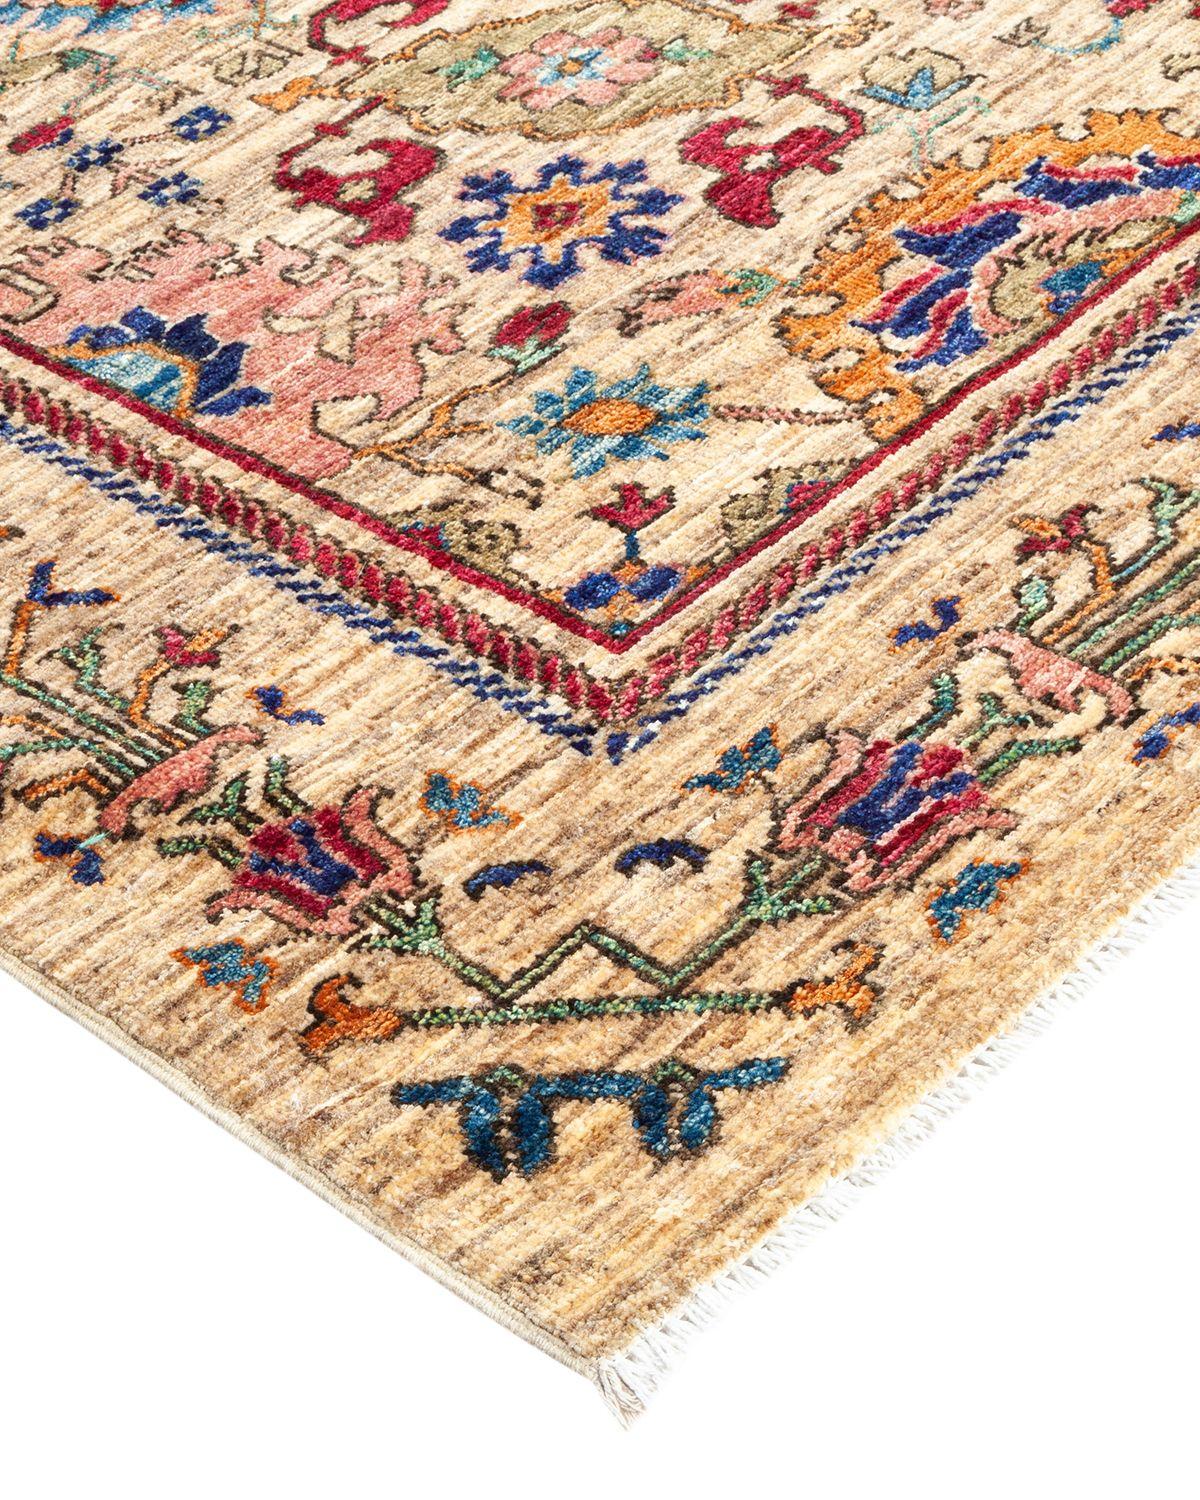 La riche tradition textile de l'Afrique de l'Ouest a inspiré la collection Tribal de tapis noués à la main. Incorporant un mélange de motifs géométriques, dans des palettes allant de la terre à la vivacité, ces tapis apportent un sentiment d'énergie